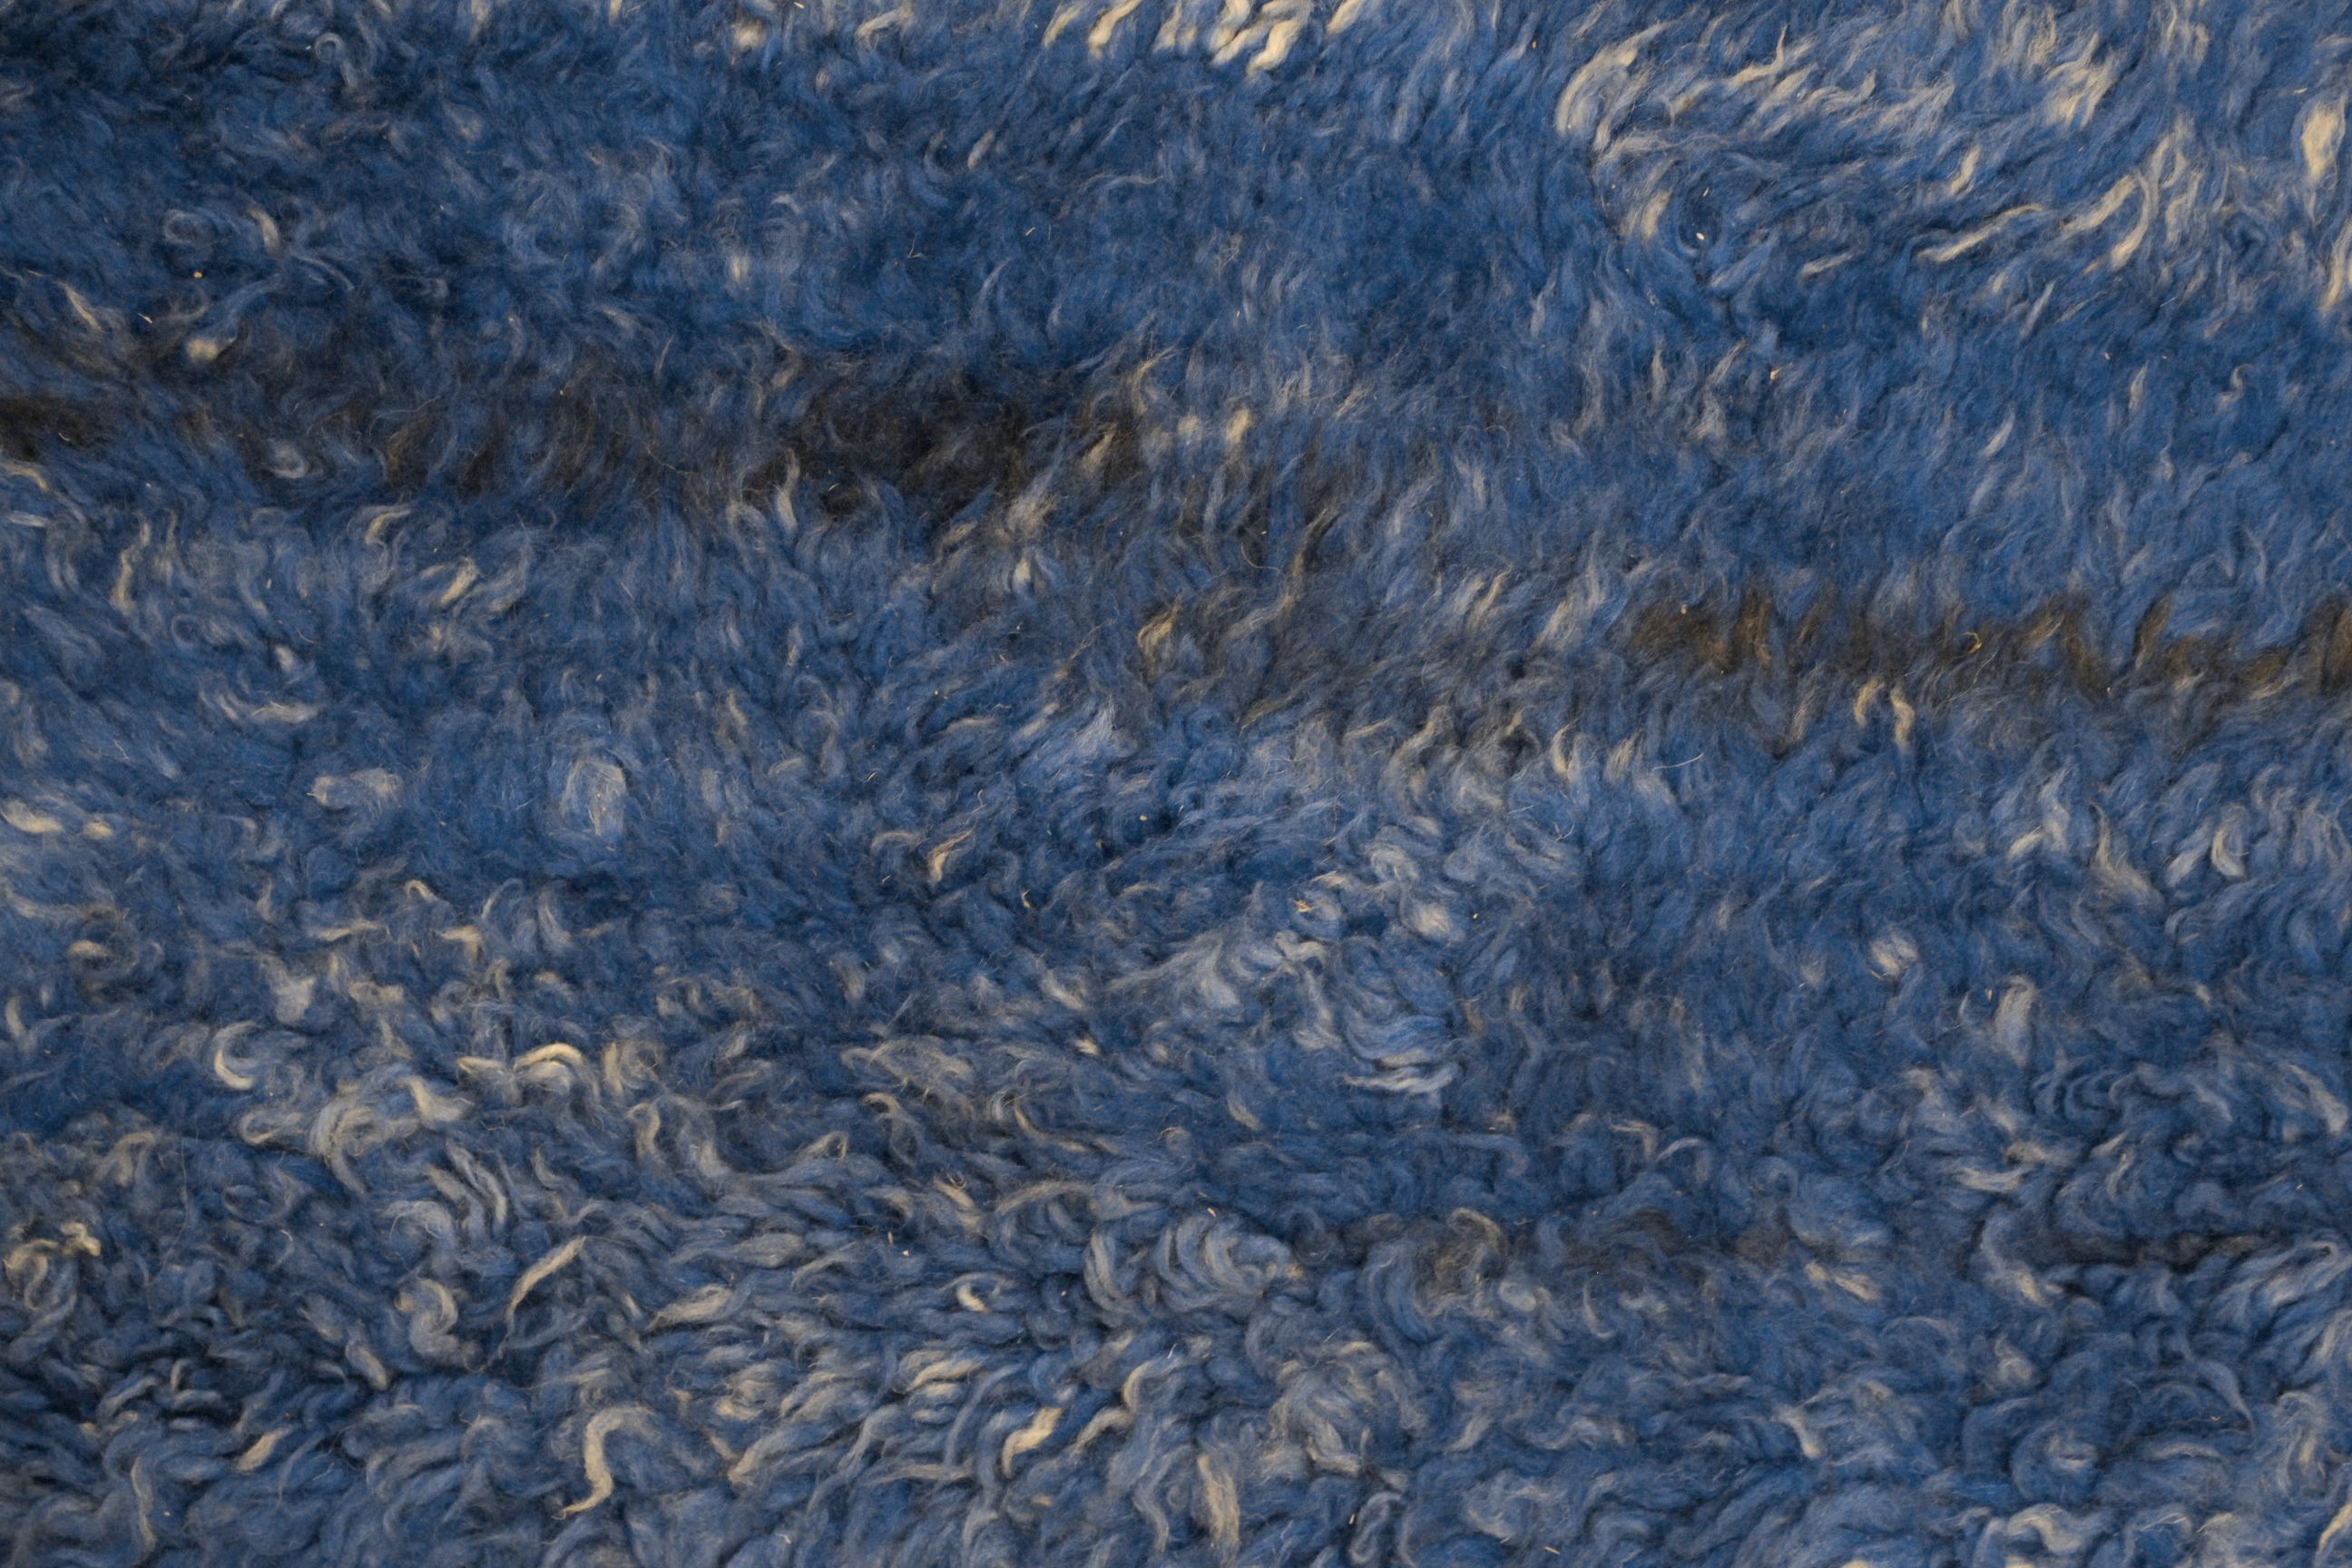 Die Teppiche des Beni Mguild-Stammes aus dem marokkanischen Mittleren Atlasgebirge zeichnen sich häufig durch den satten Farbton ihrer einfarbigen Teppiche aus, die mit lanolinreicher Wolle gewebt und besonders robust verarbeitet sind. Dieses